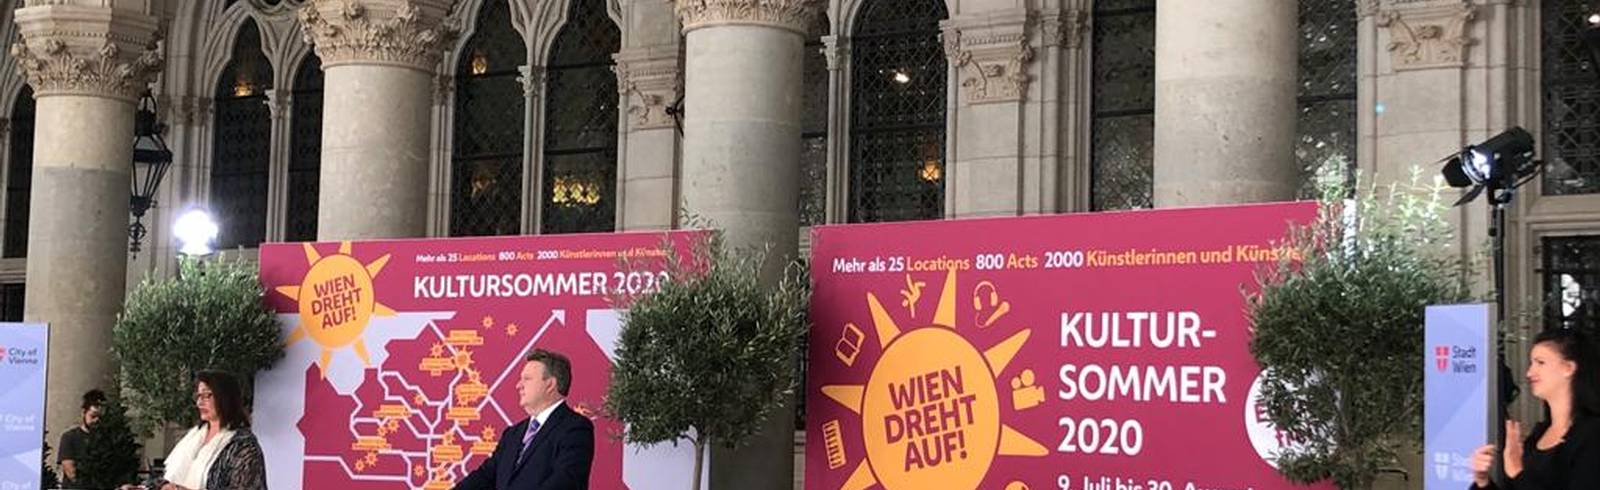 Sommer: "Wien dreht auf"